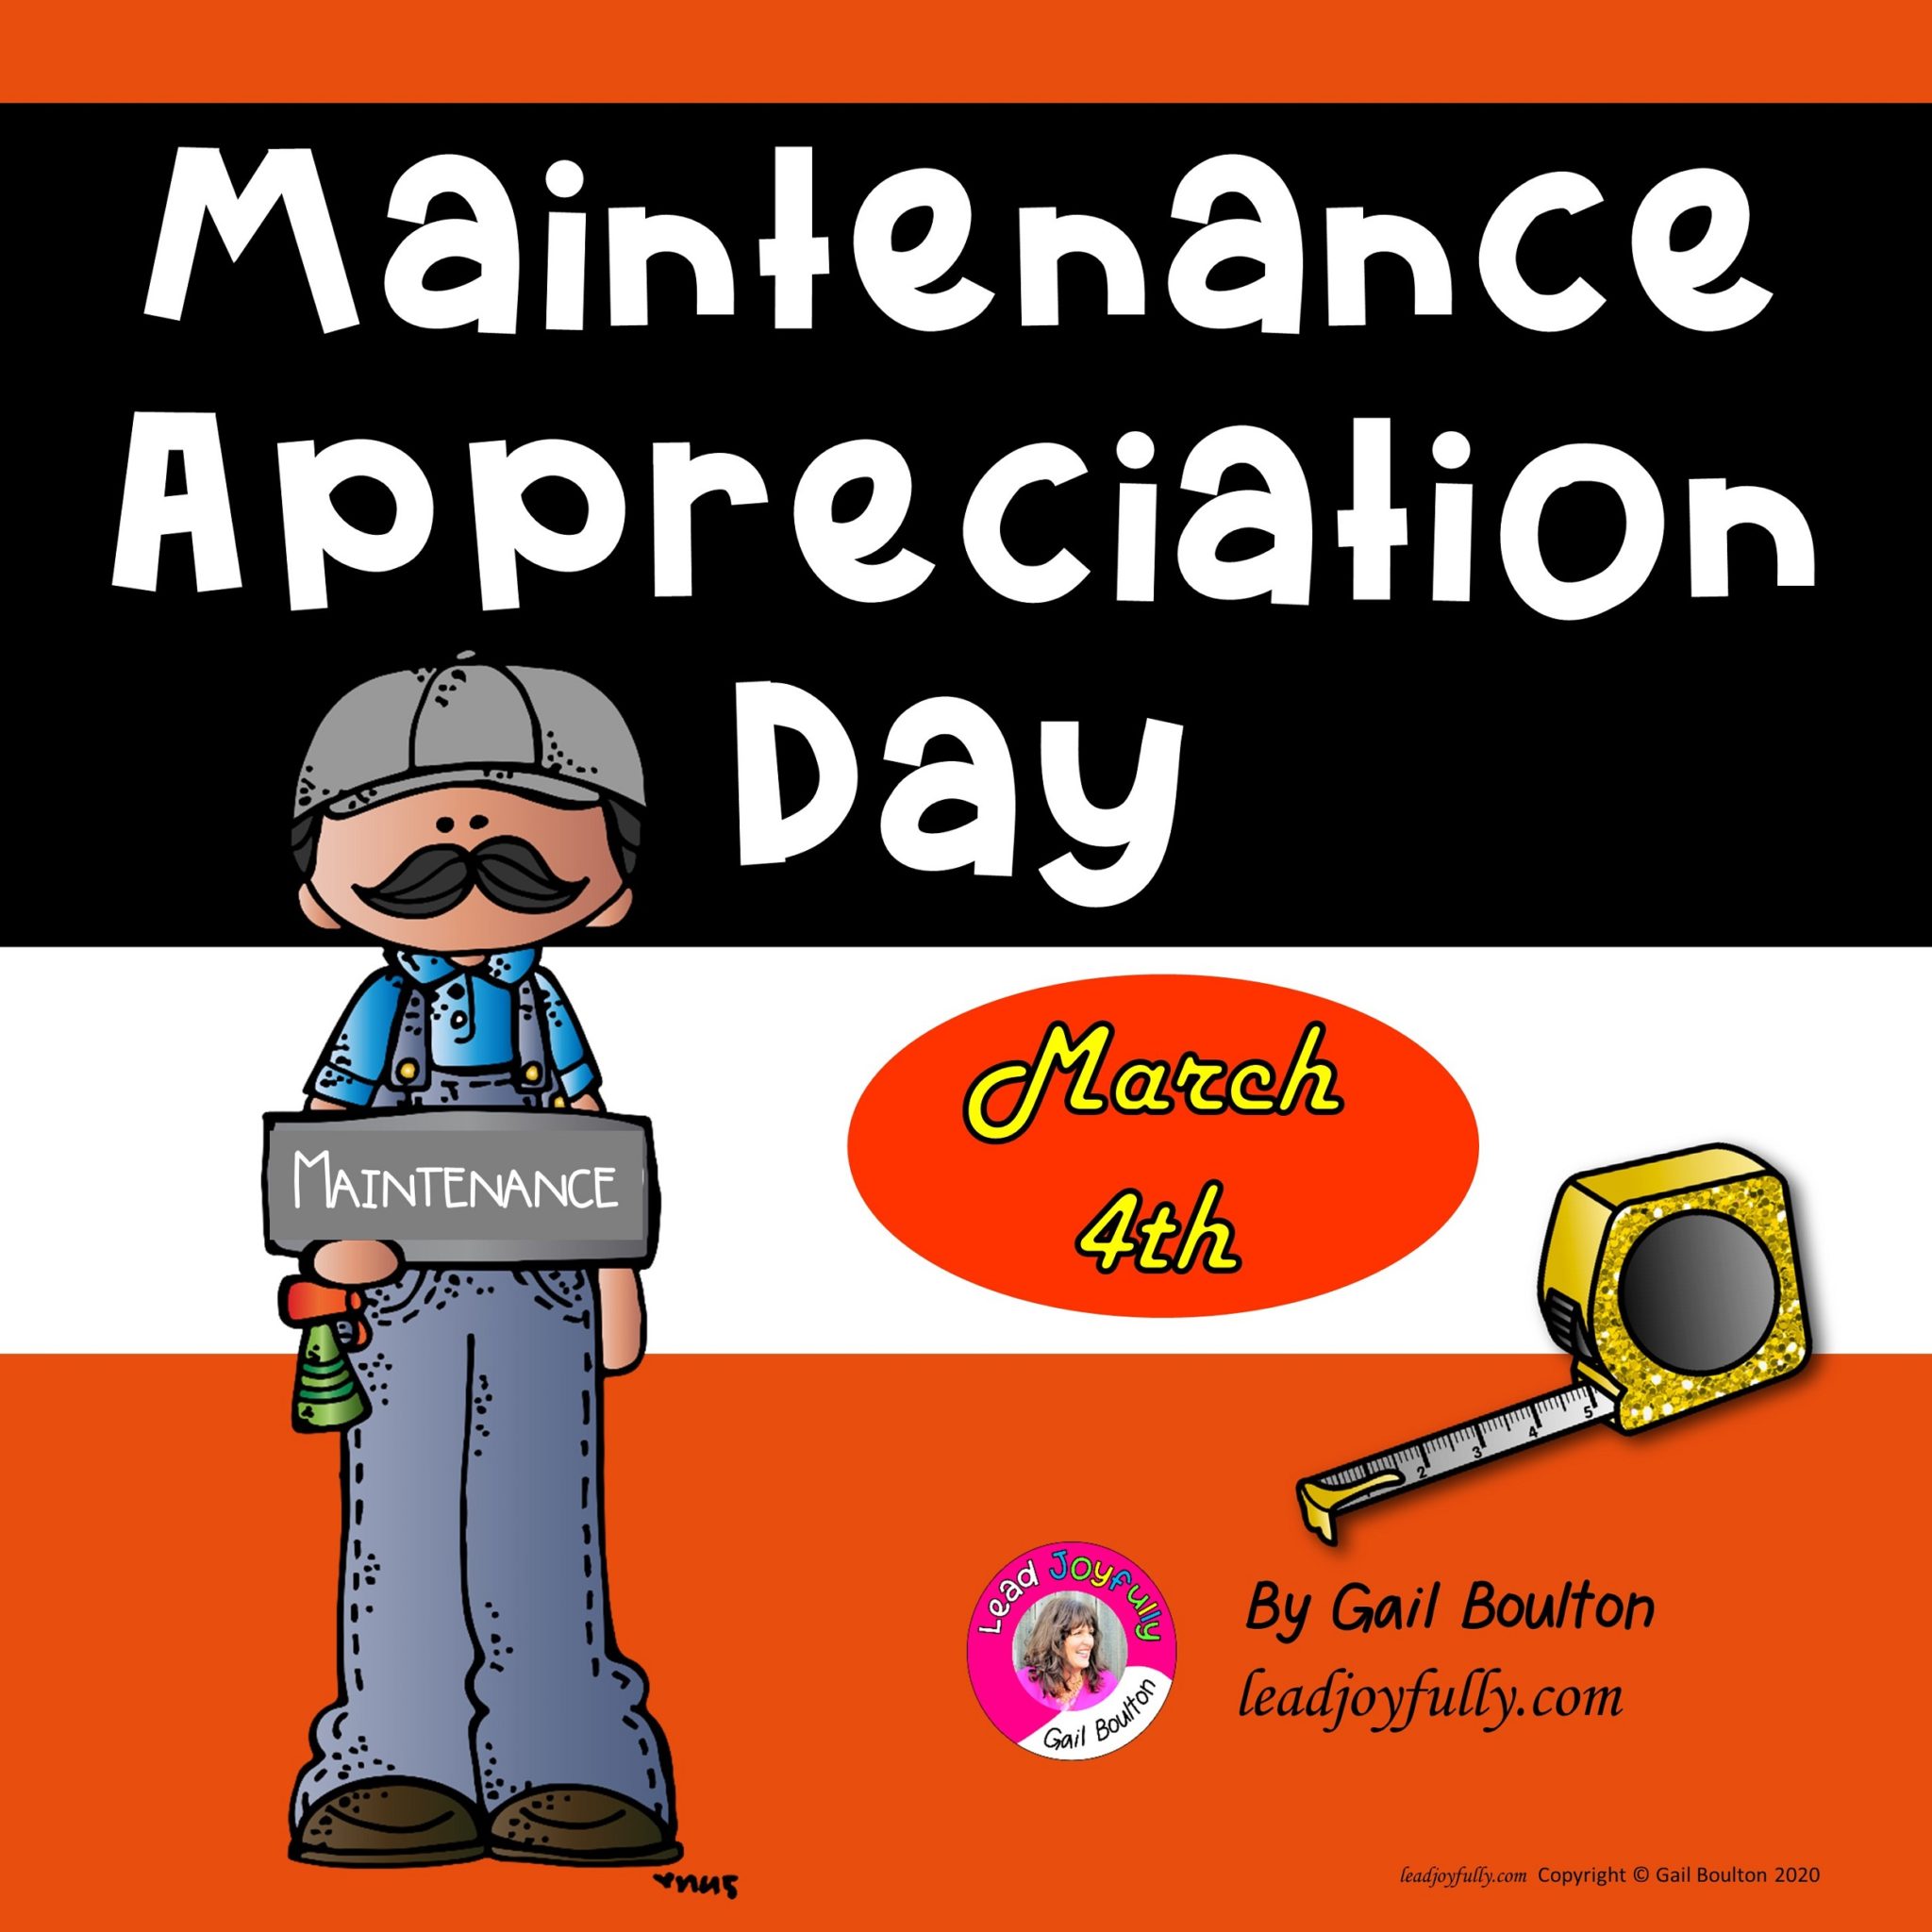 Maintenance Worker Appreciation Day March 4, 2022 Lead Joyfully